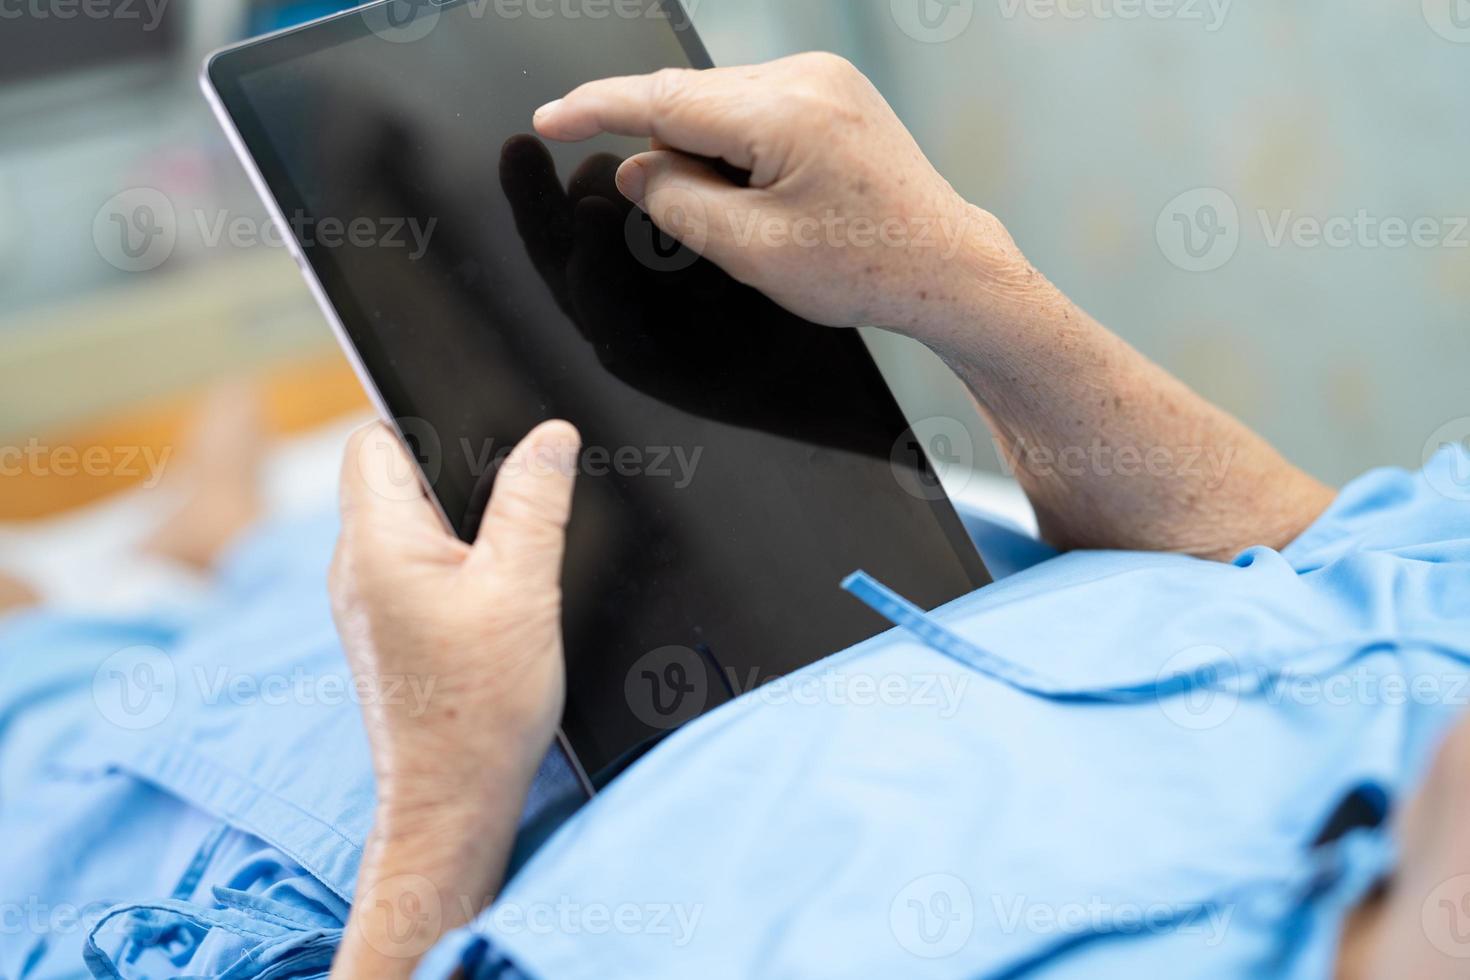 Aziatische senior of oudere oude dame vrouw patiënt die in haar handen digitale tablet houdt en e-mails leest terwijl ze op bed zit in de verpleegafdeling van het ziekenhuis, gezond sterk medisch concept foto